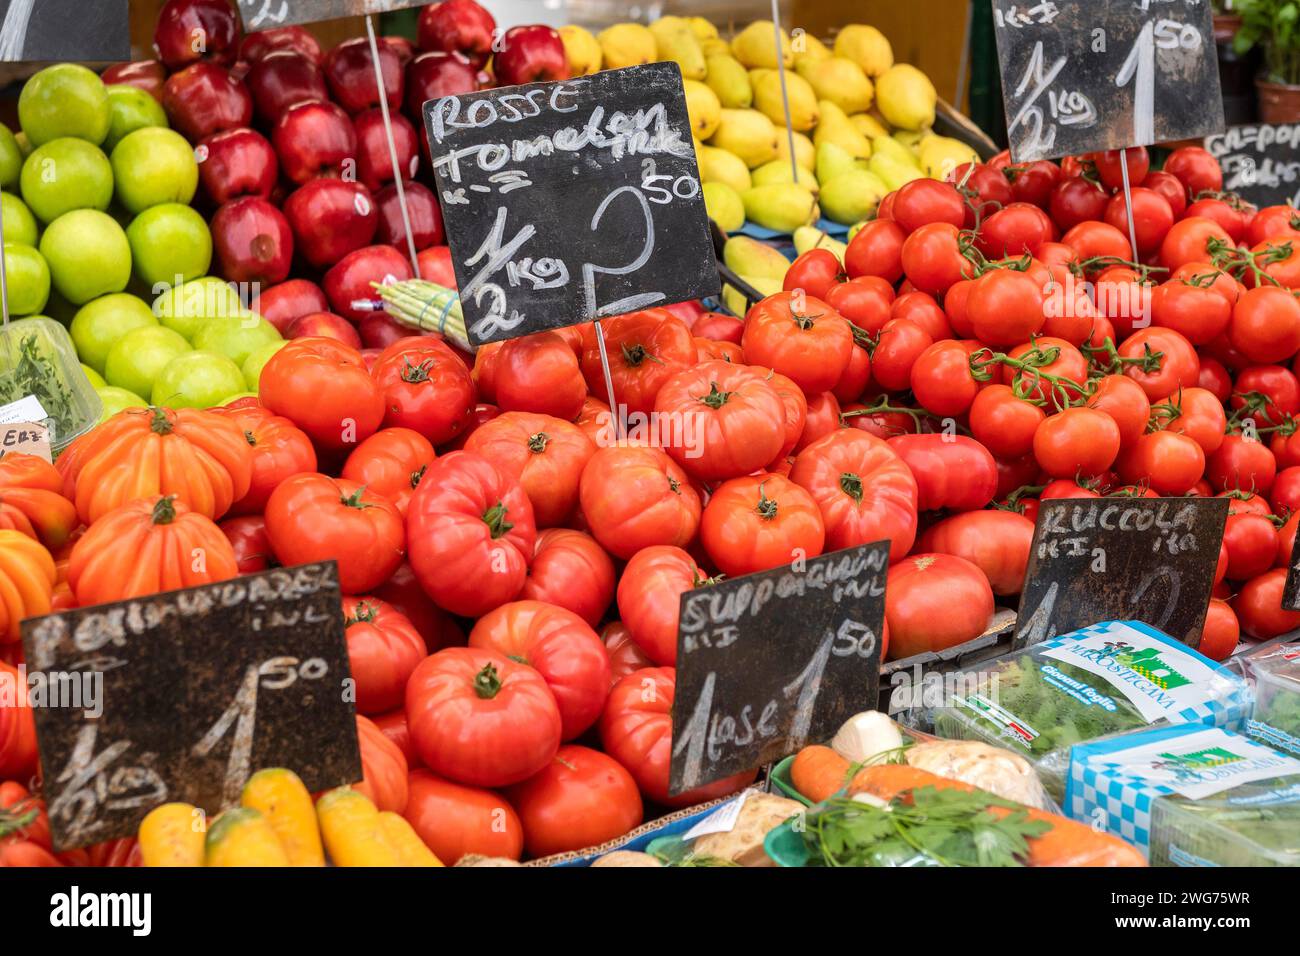 Vegetables And Fruit, Vienna Naschmarkt, Vienna, Austria Stock Photo